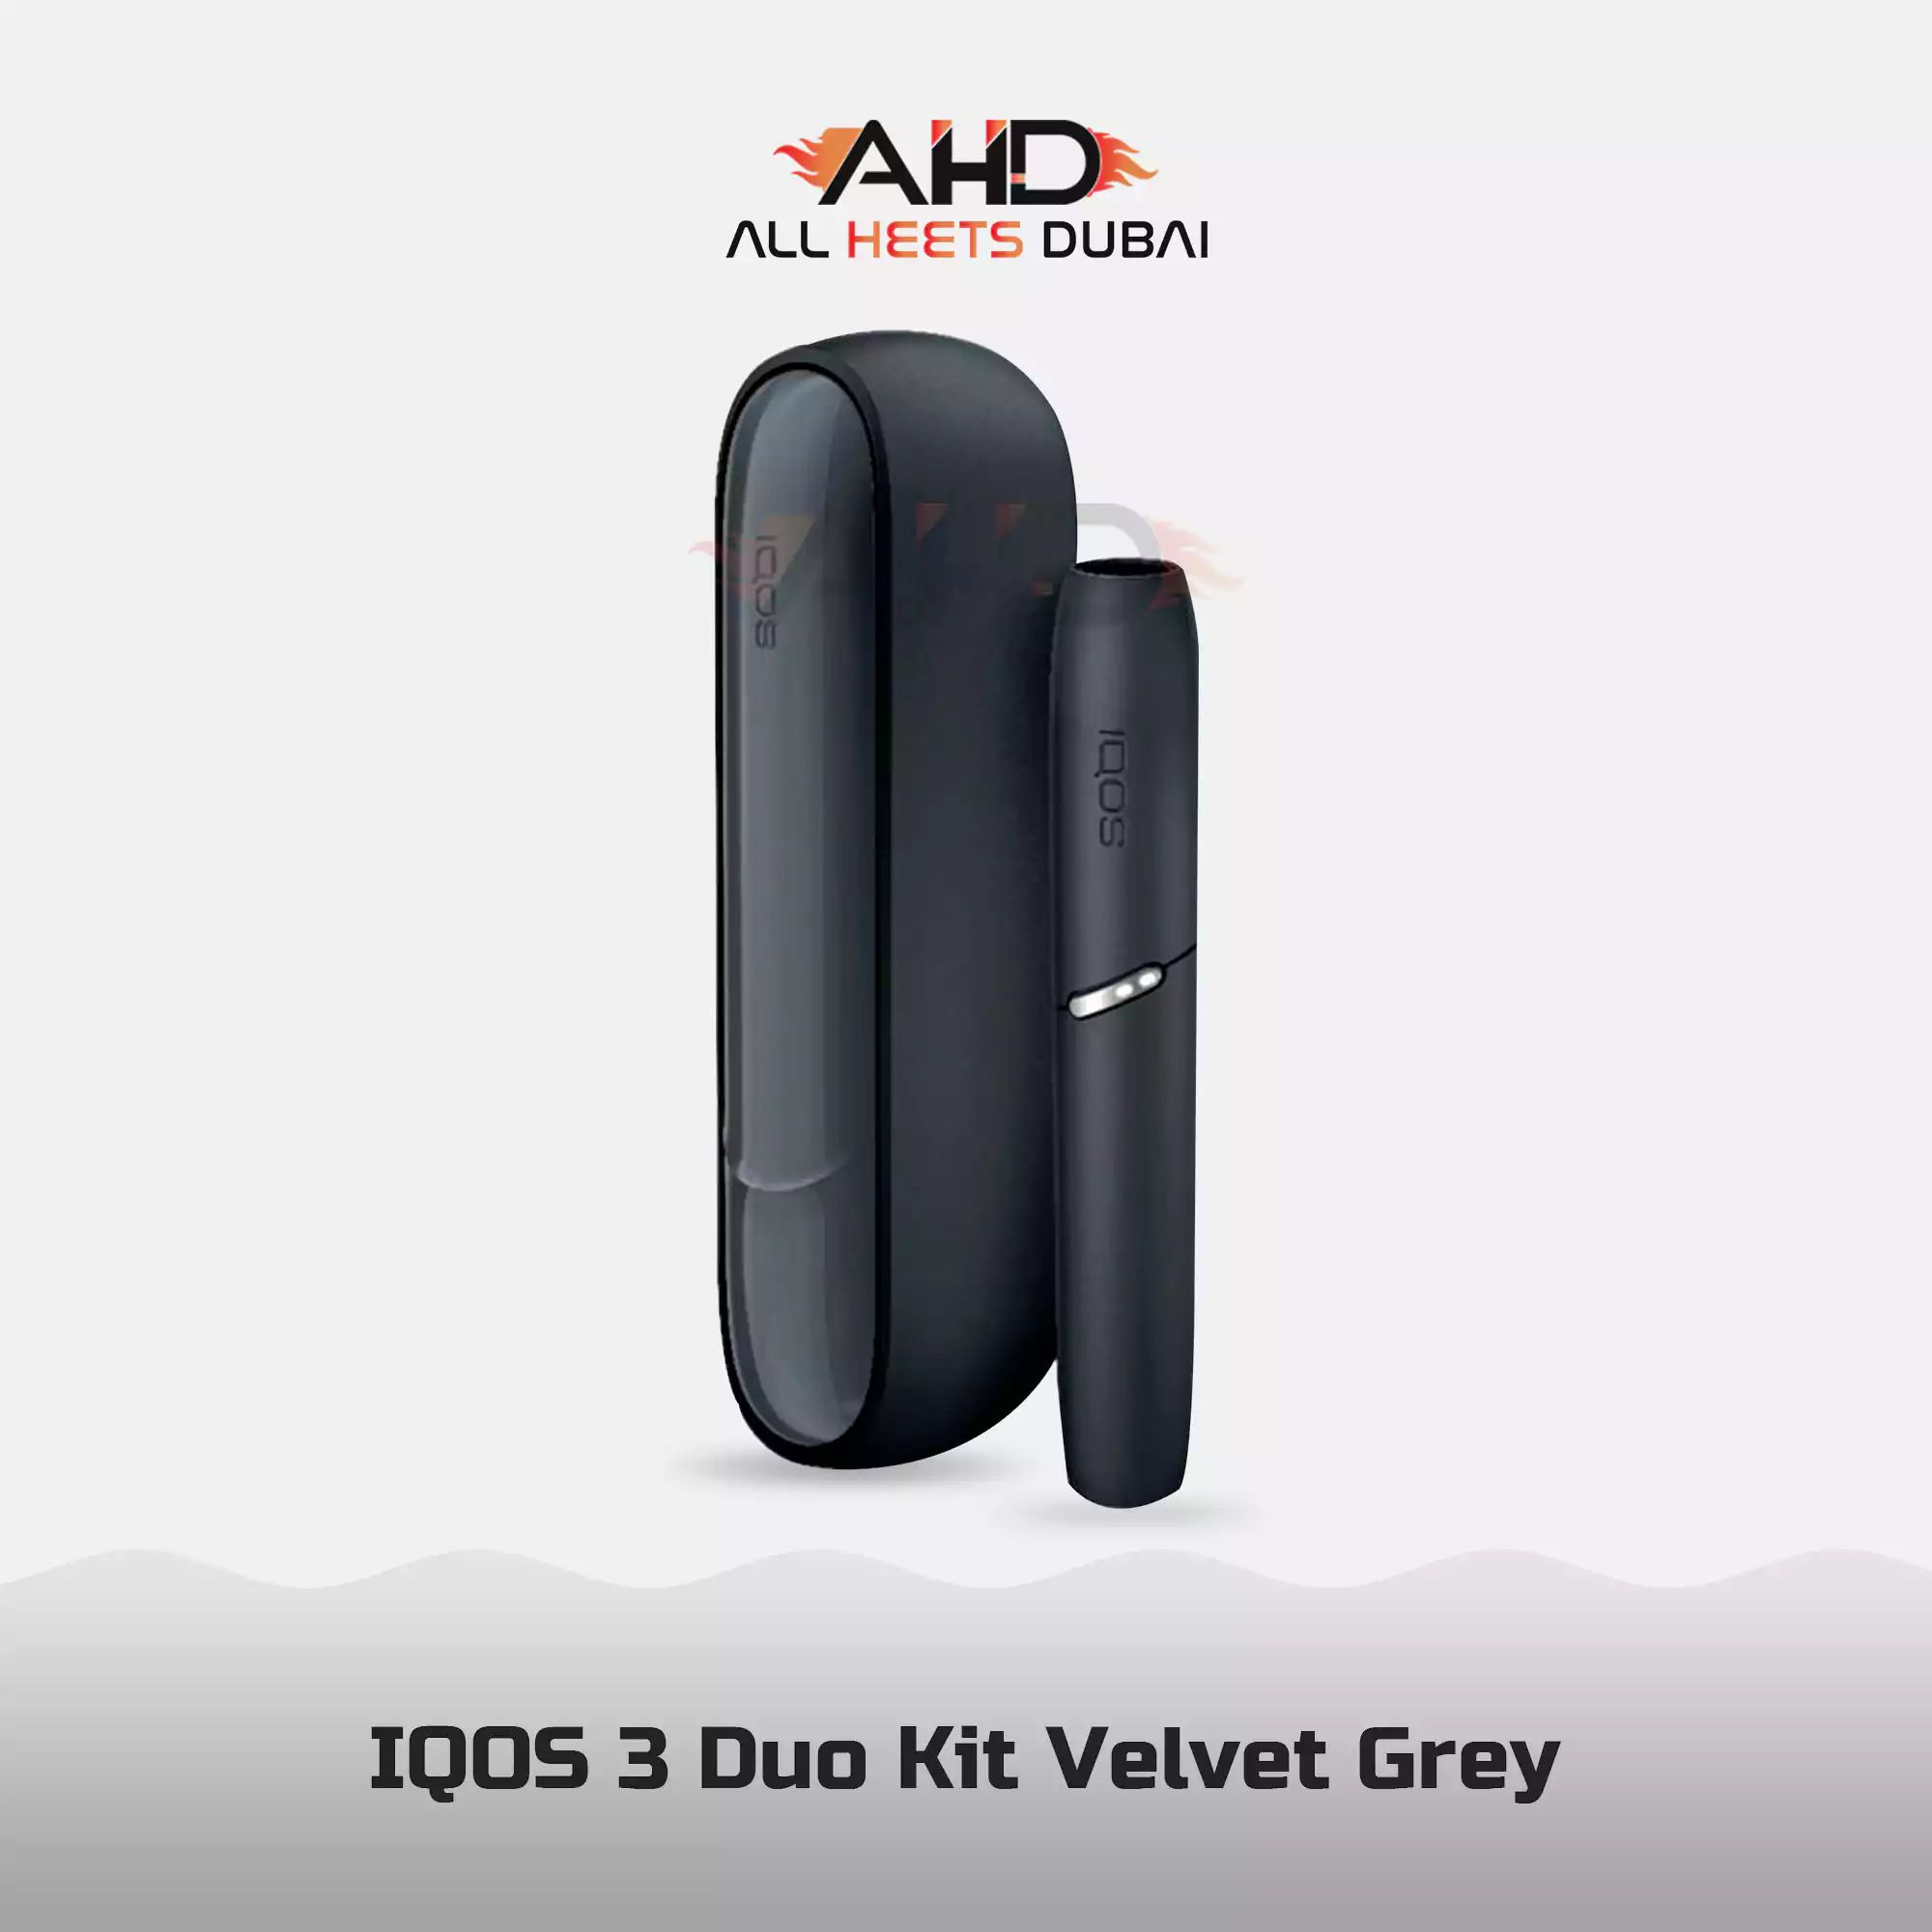 Iqos 3 Duo Starterkit - Velvet Grey bei Flink online bestellen!